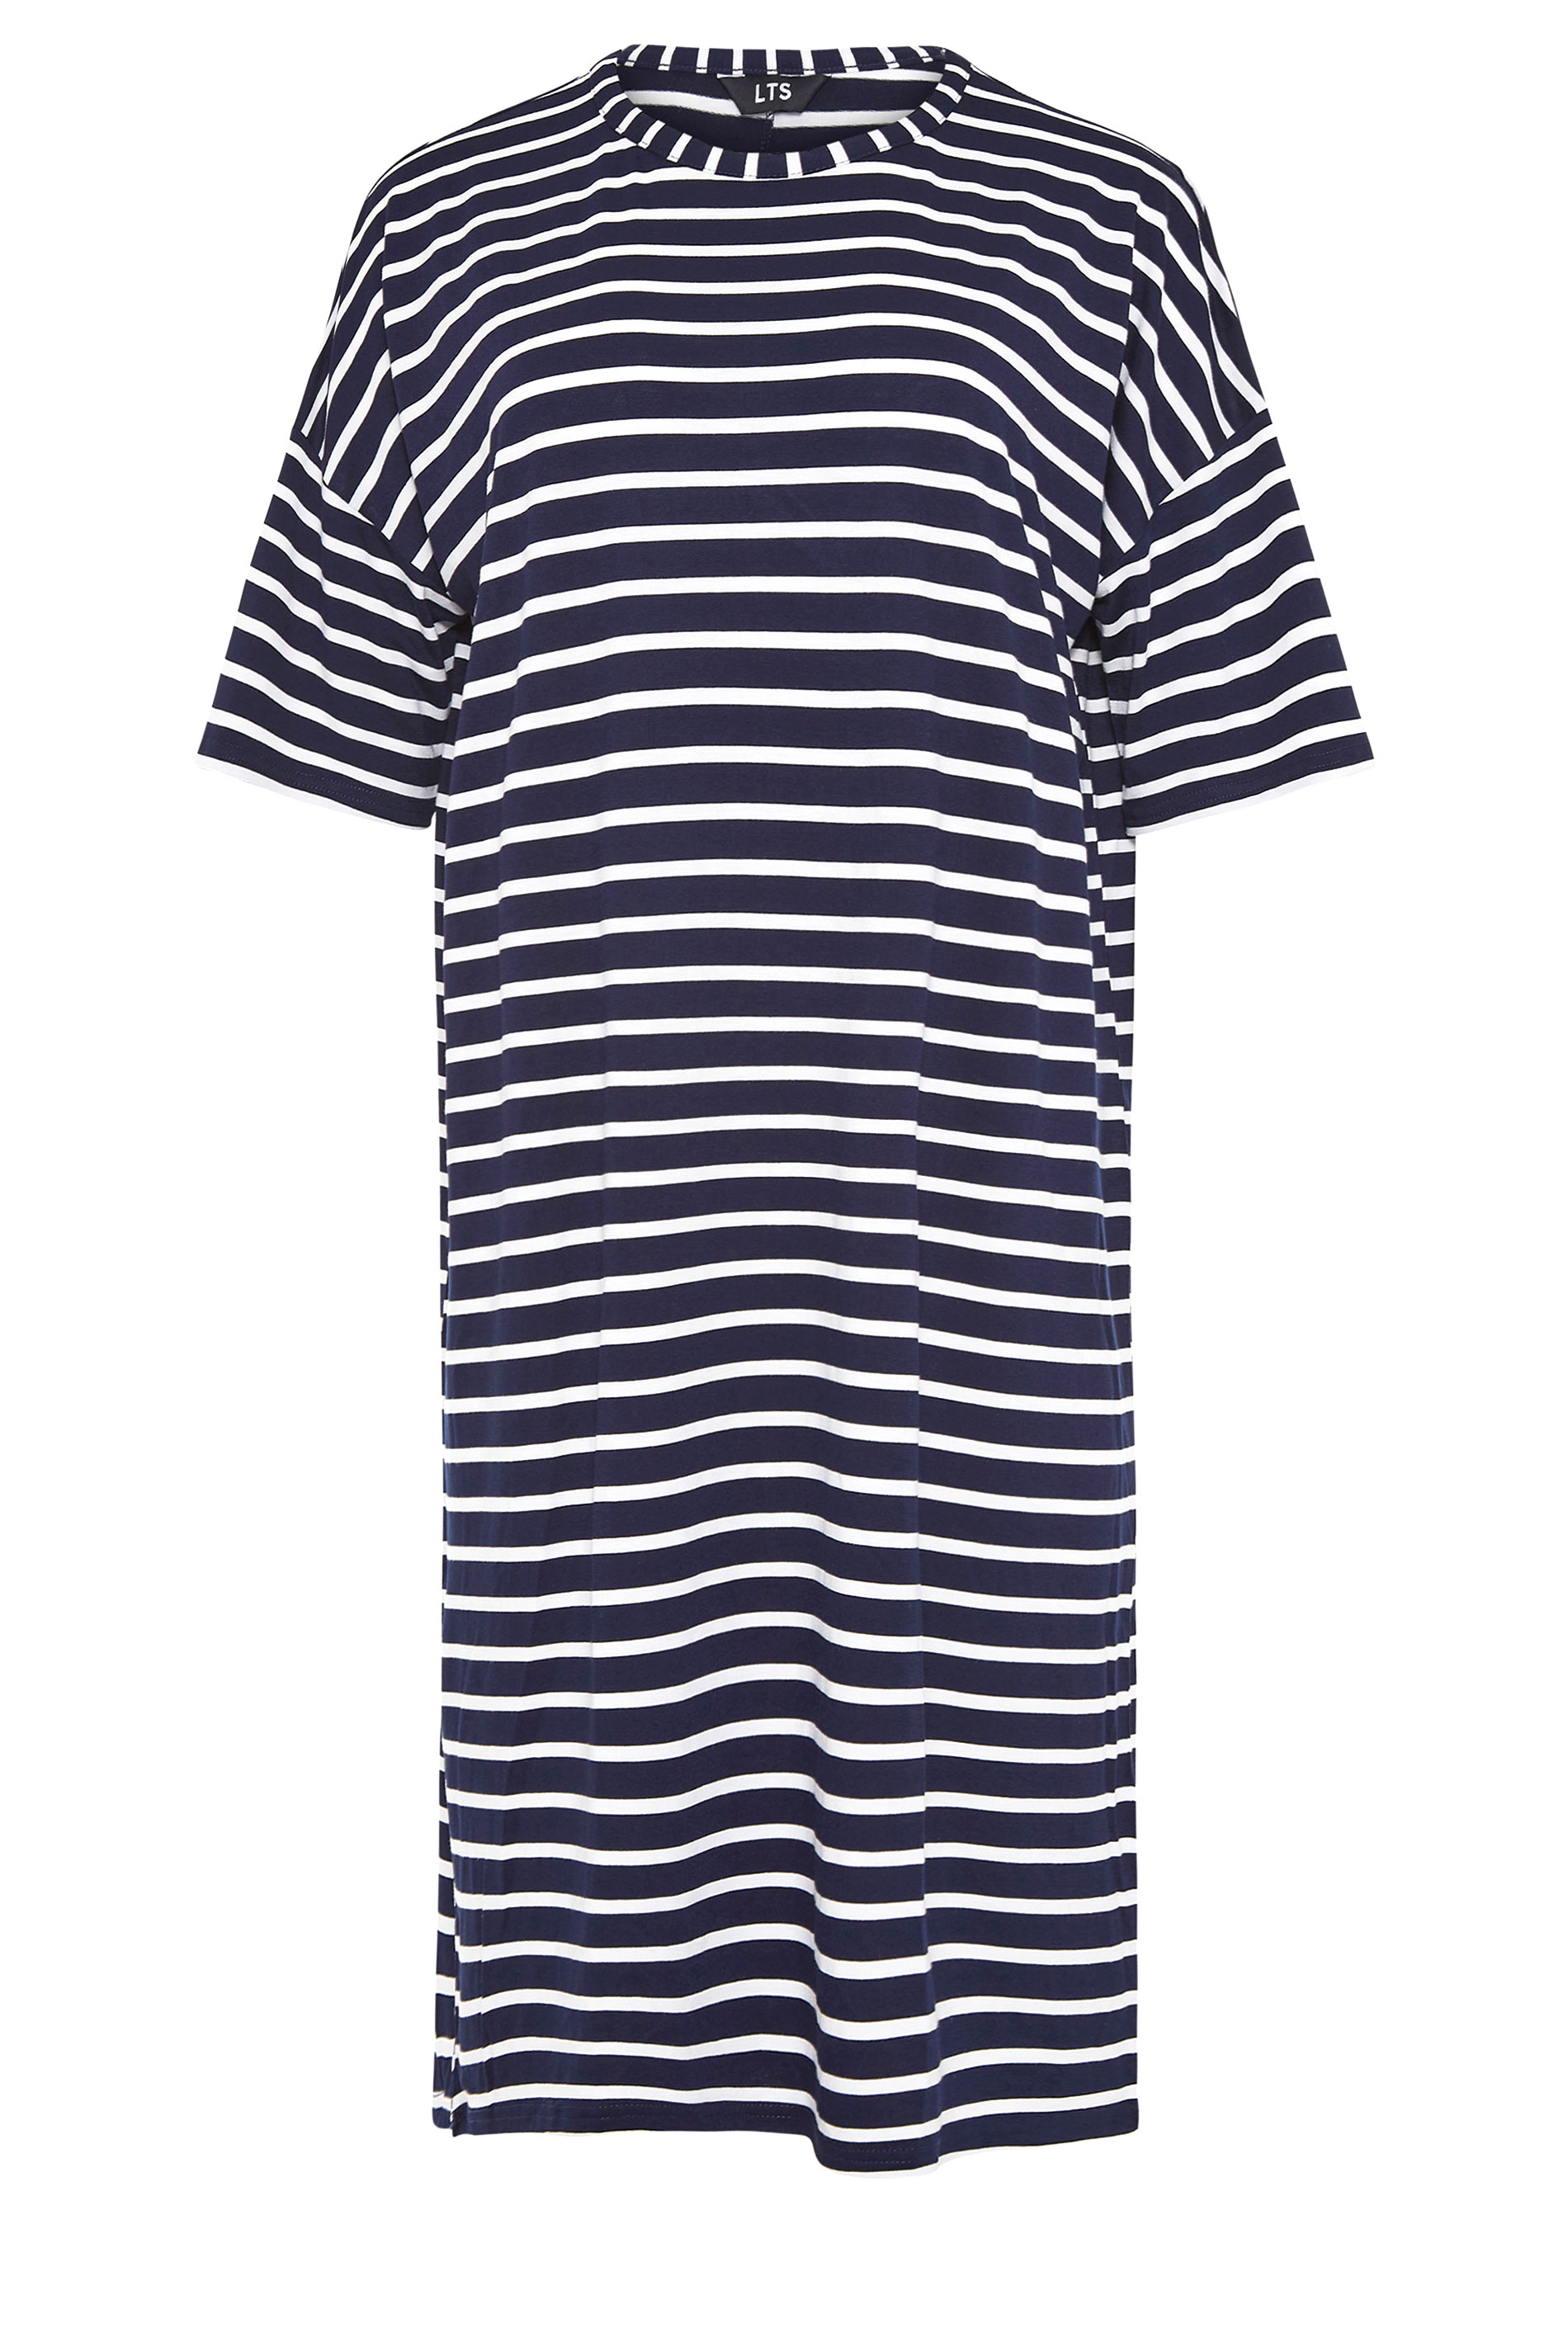 LTS Navy Blue Stripe T-Shirt Dress | Long Tall Sally